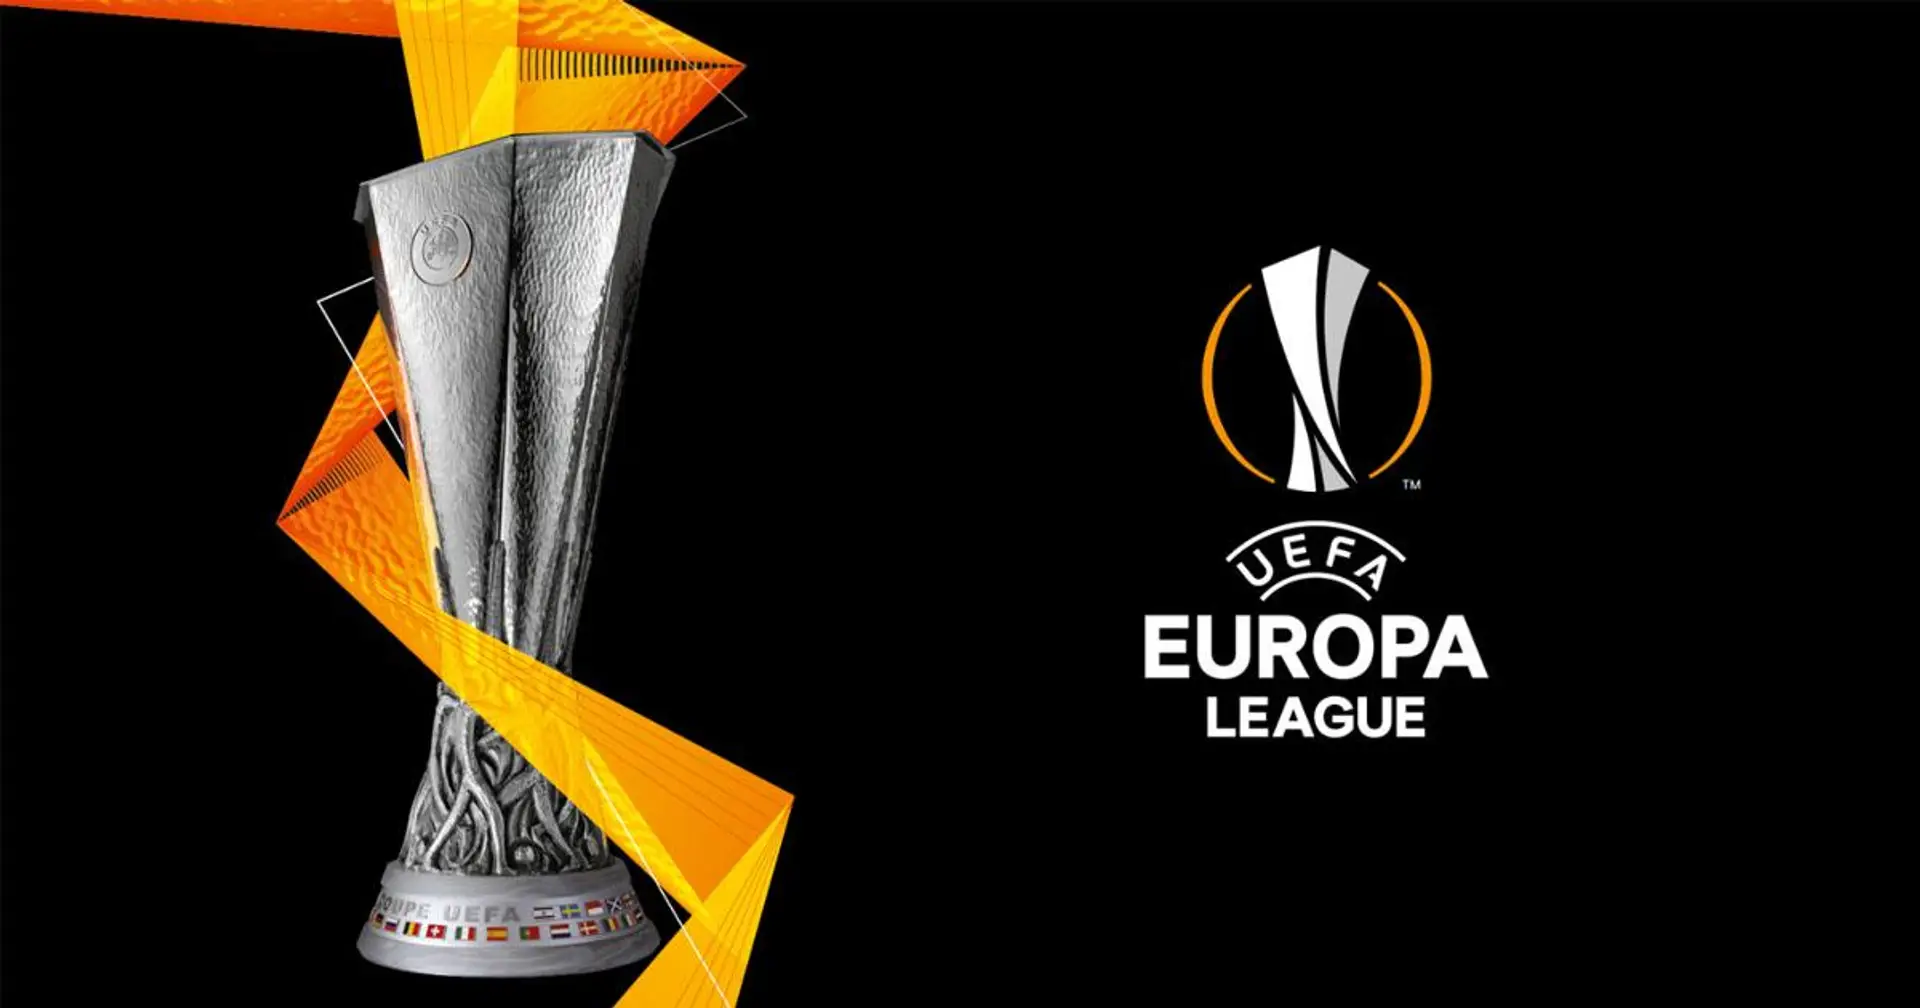 Oggi alle ore 13 ci sarà sorteggio per i sedicesimi di finale di Europa League: tutto quello che dovete sapere